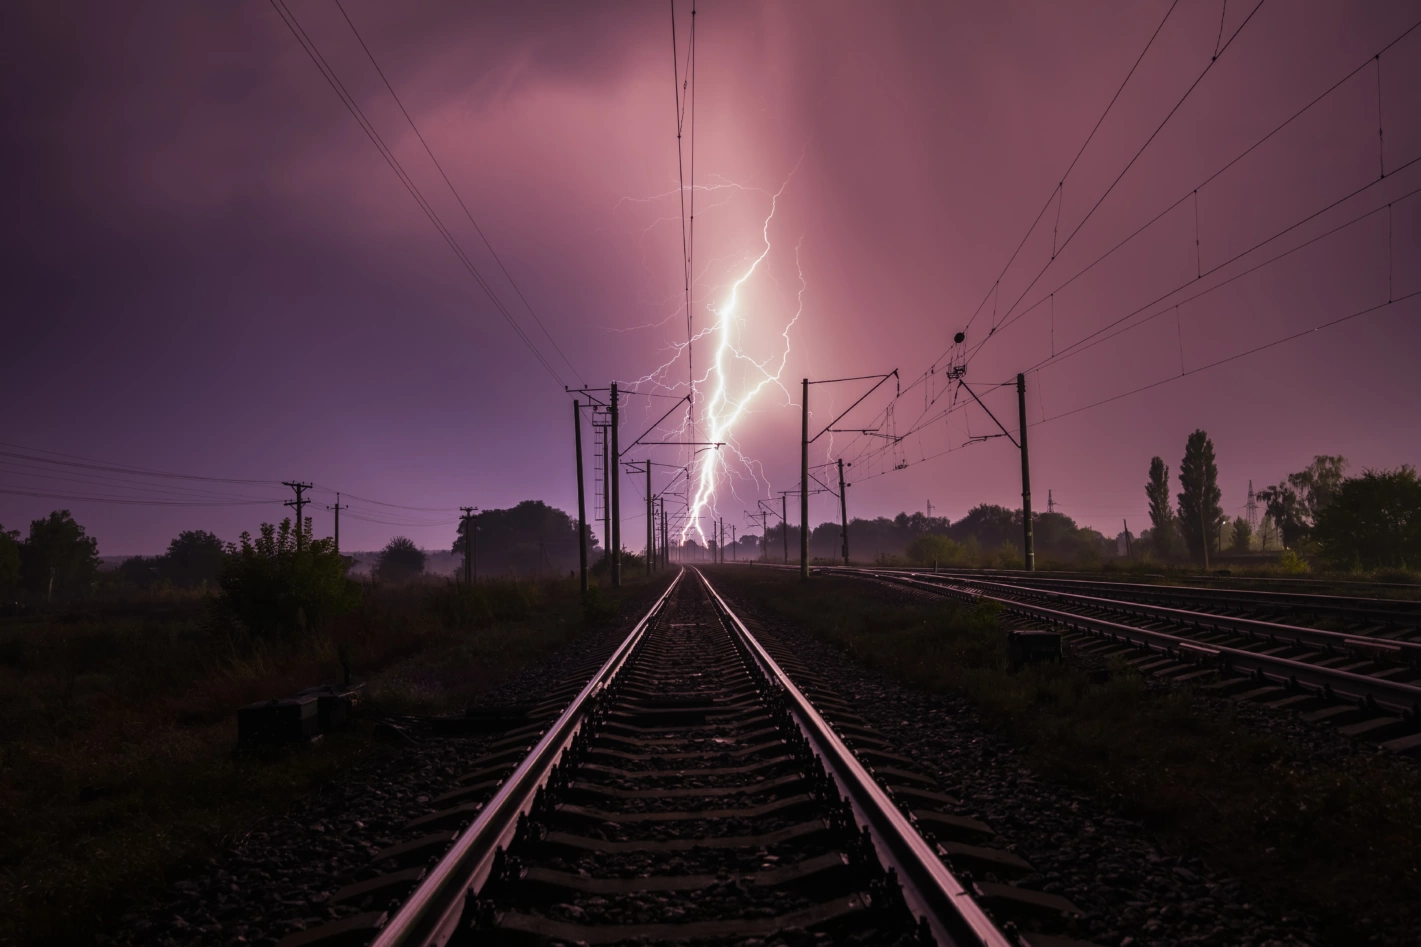 Wenn die Bahn internationale Direktverbindungen kappt, hätte das negative Folgen für die Umwelt. Foto: Anton Petrus (gettyimages)